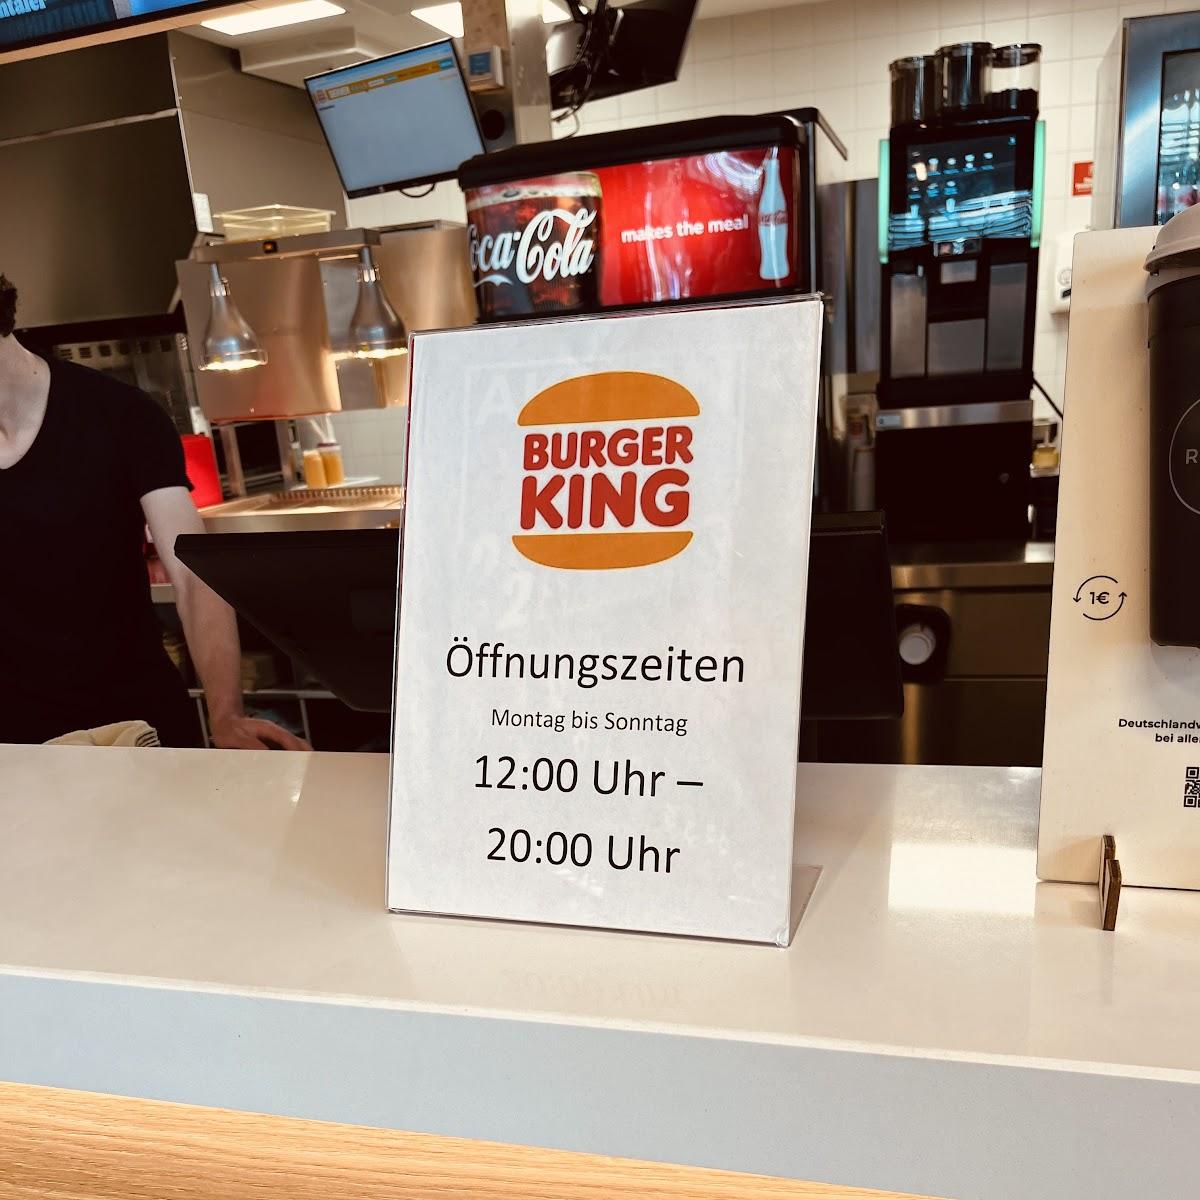 Restaurant "Burger King" in Hausen bei Würzburg